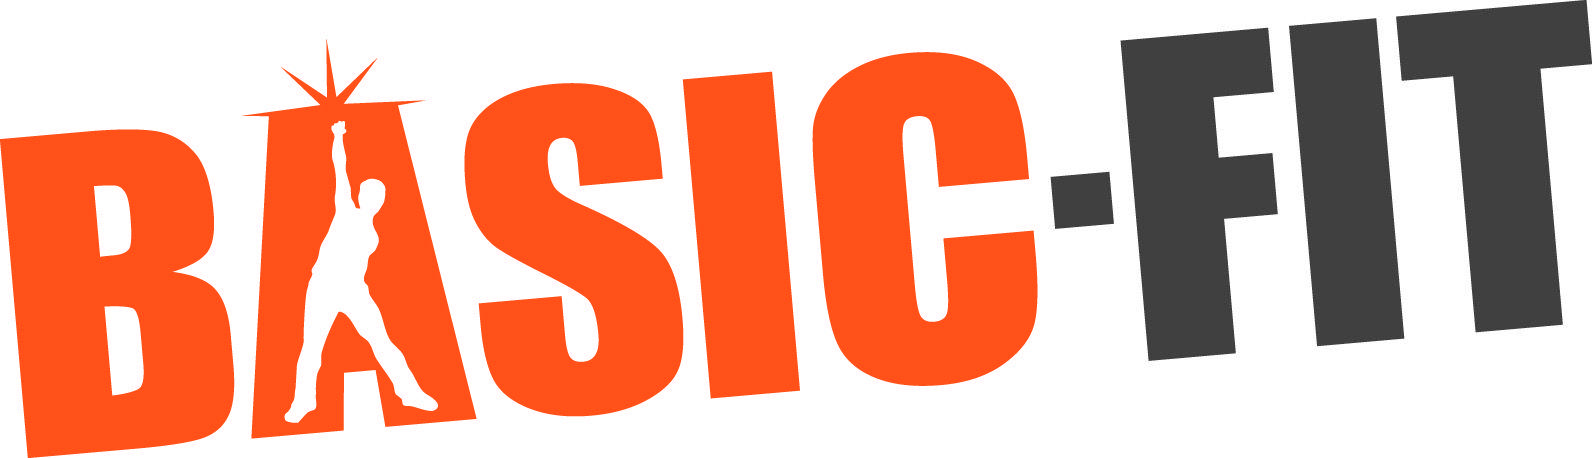 Basic Logo - Media Resources